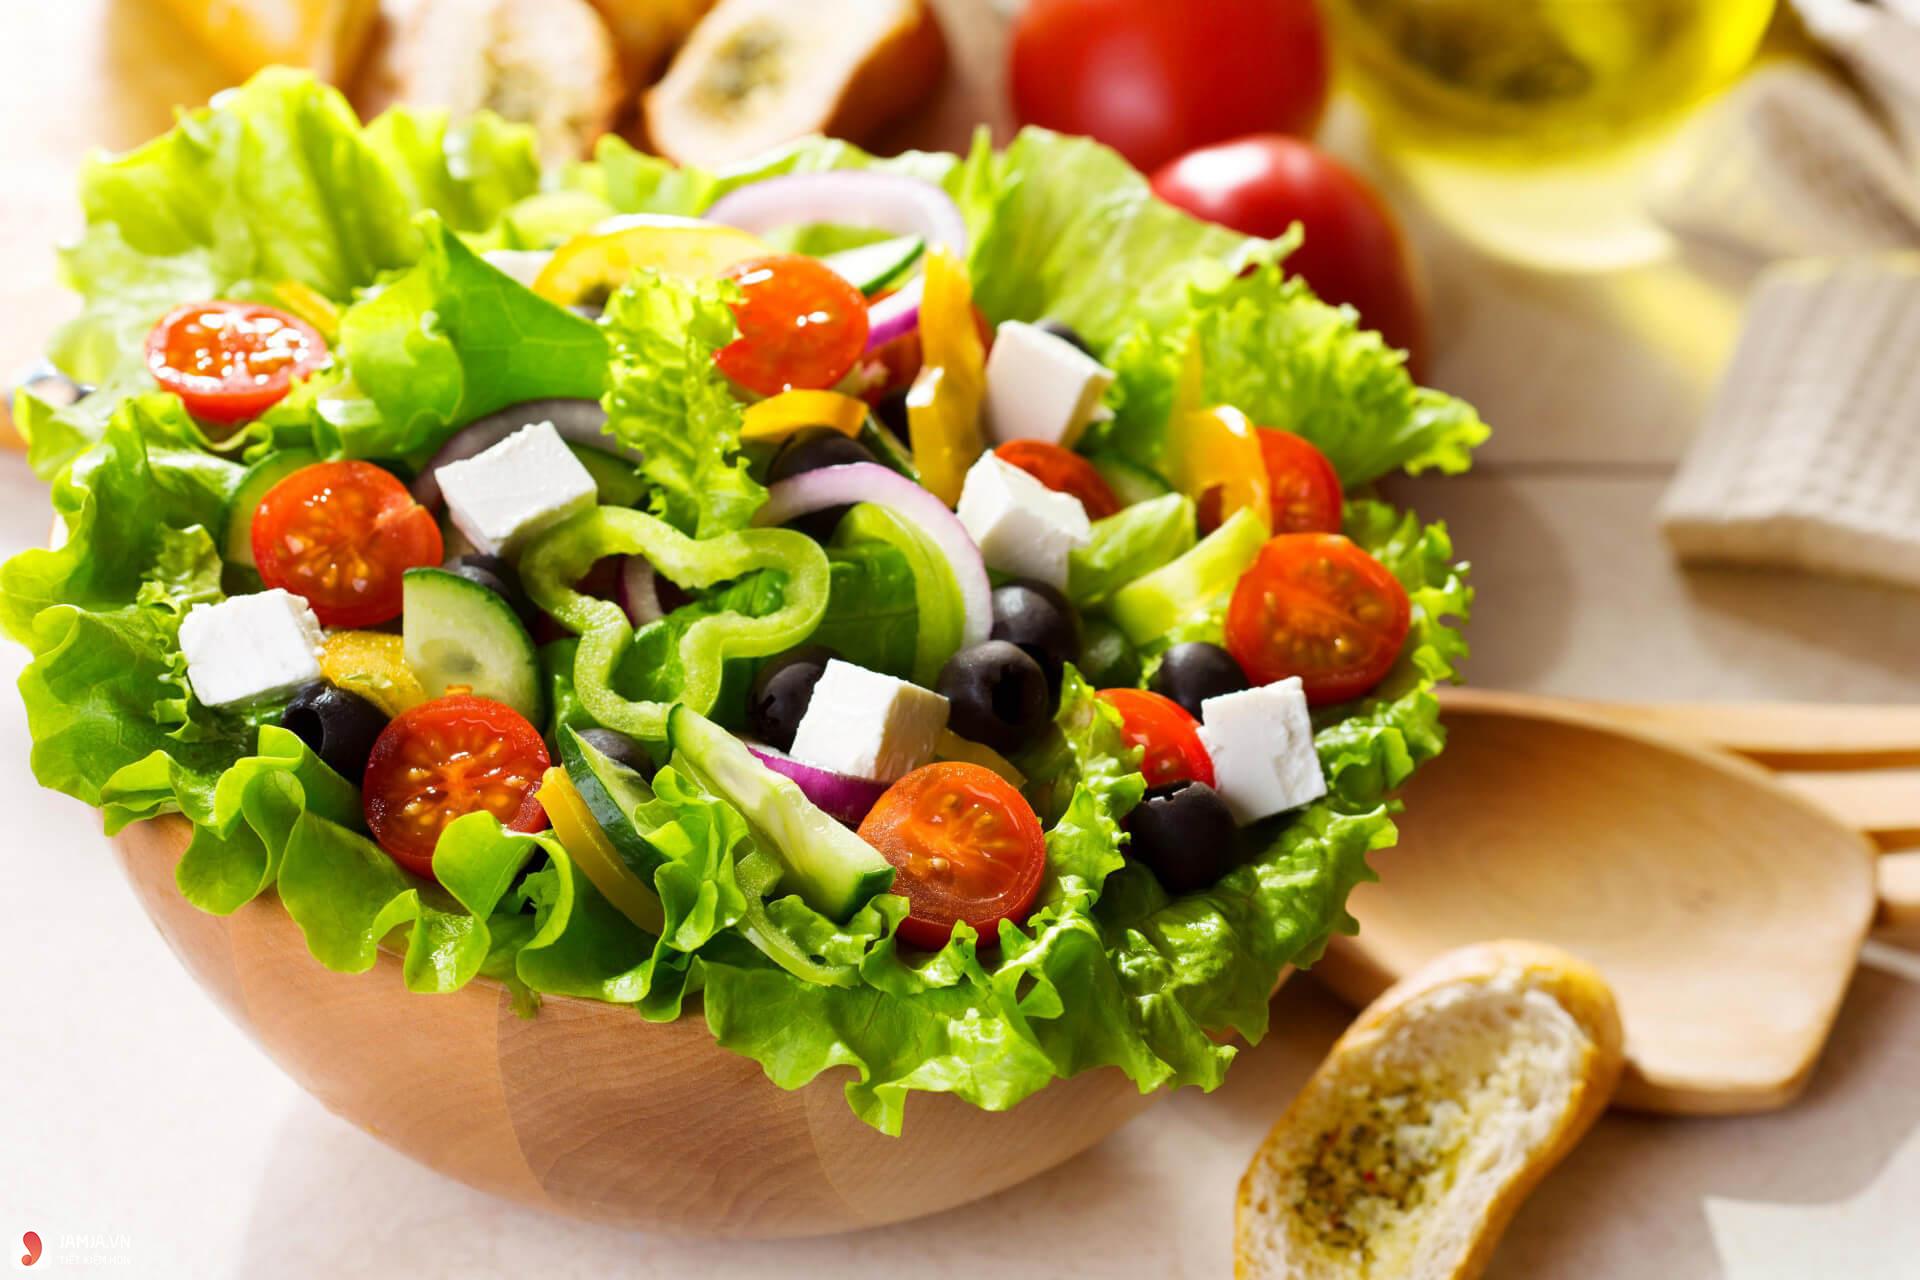 Những nguyên liệu cần chuẩn bị để làm món salad sốt chanh leo?
